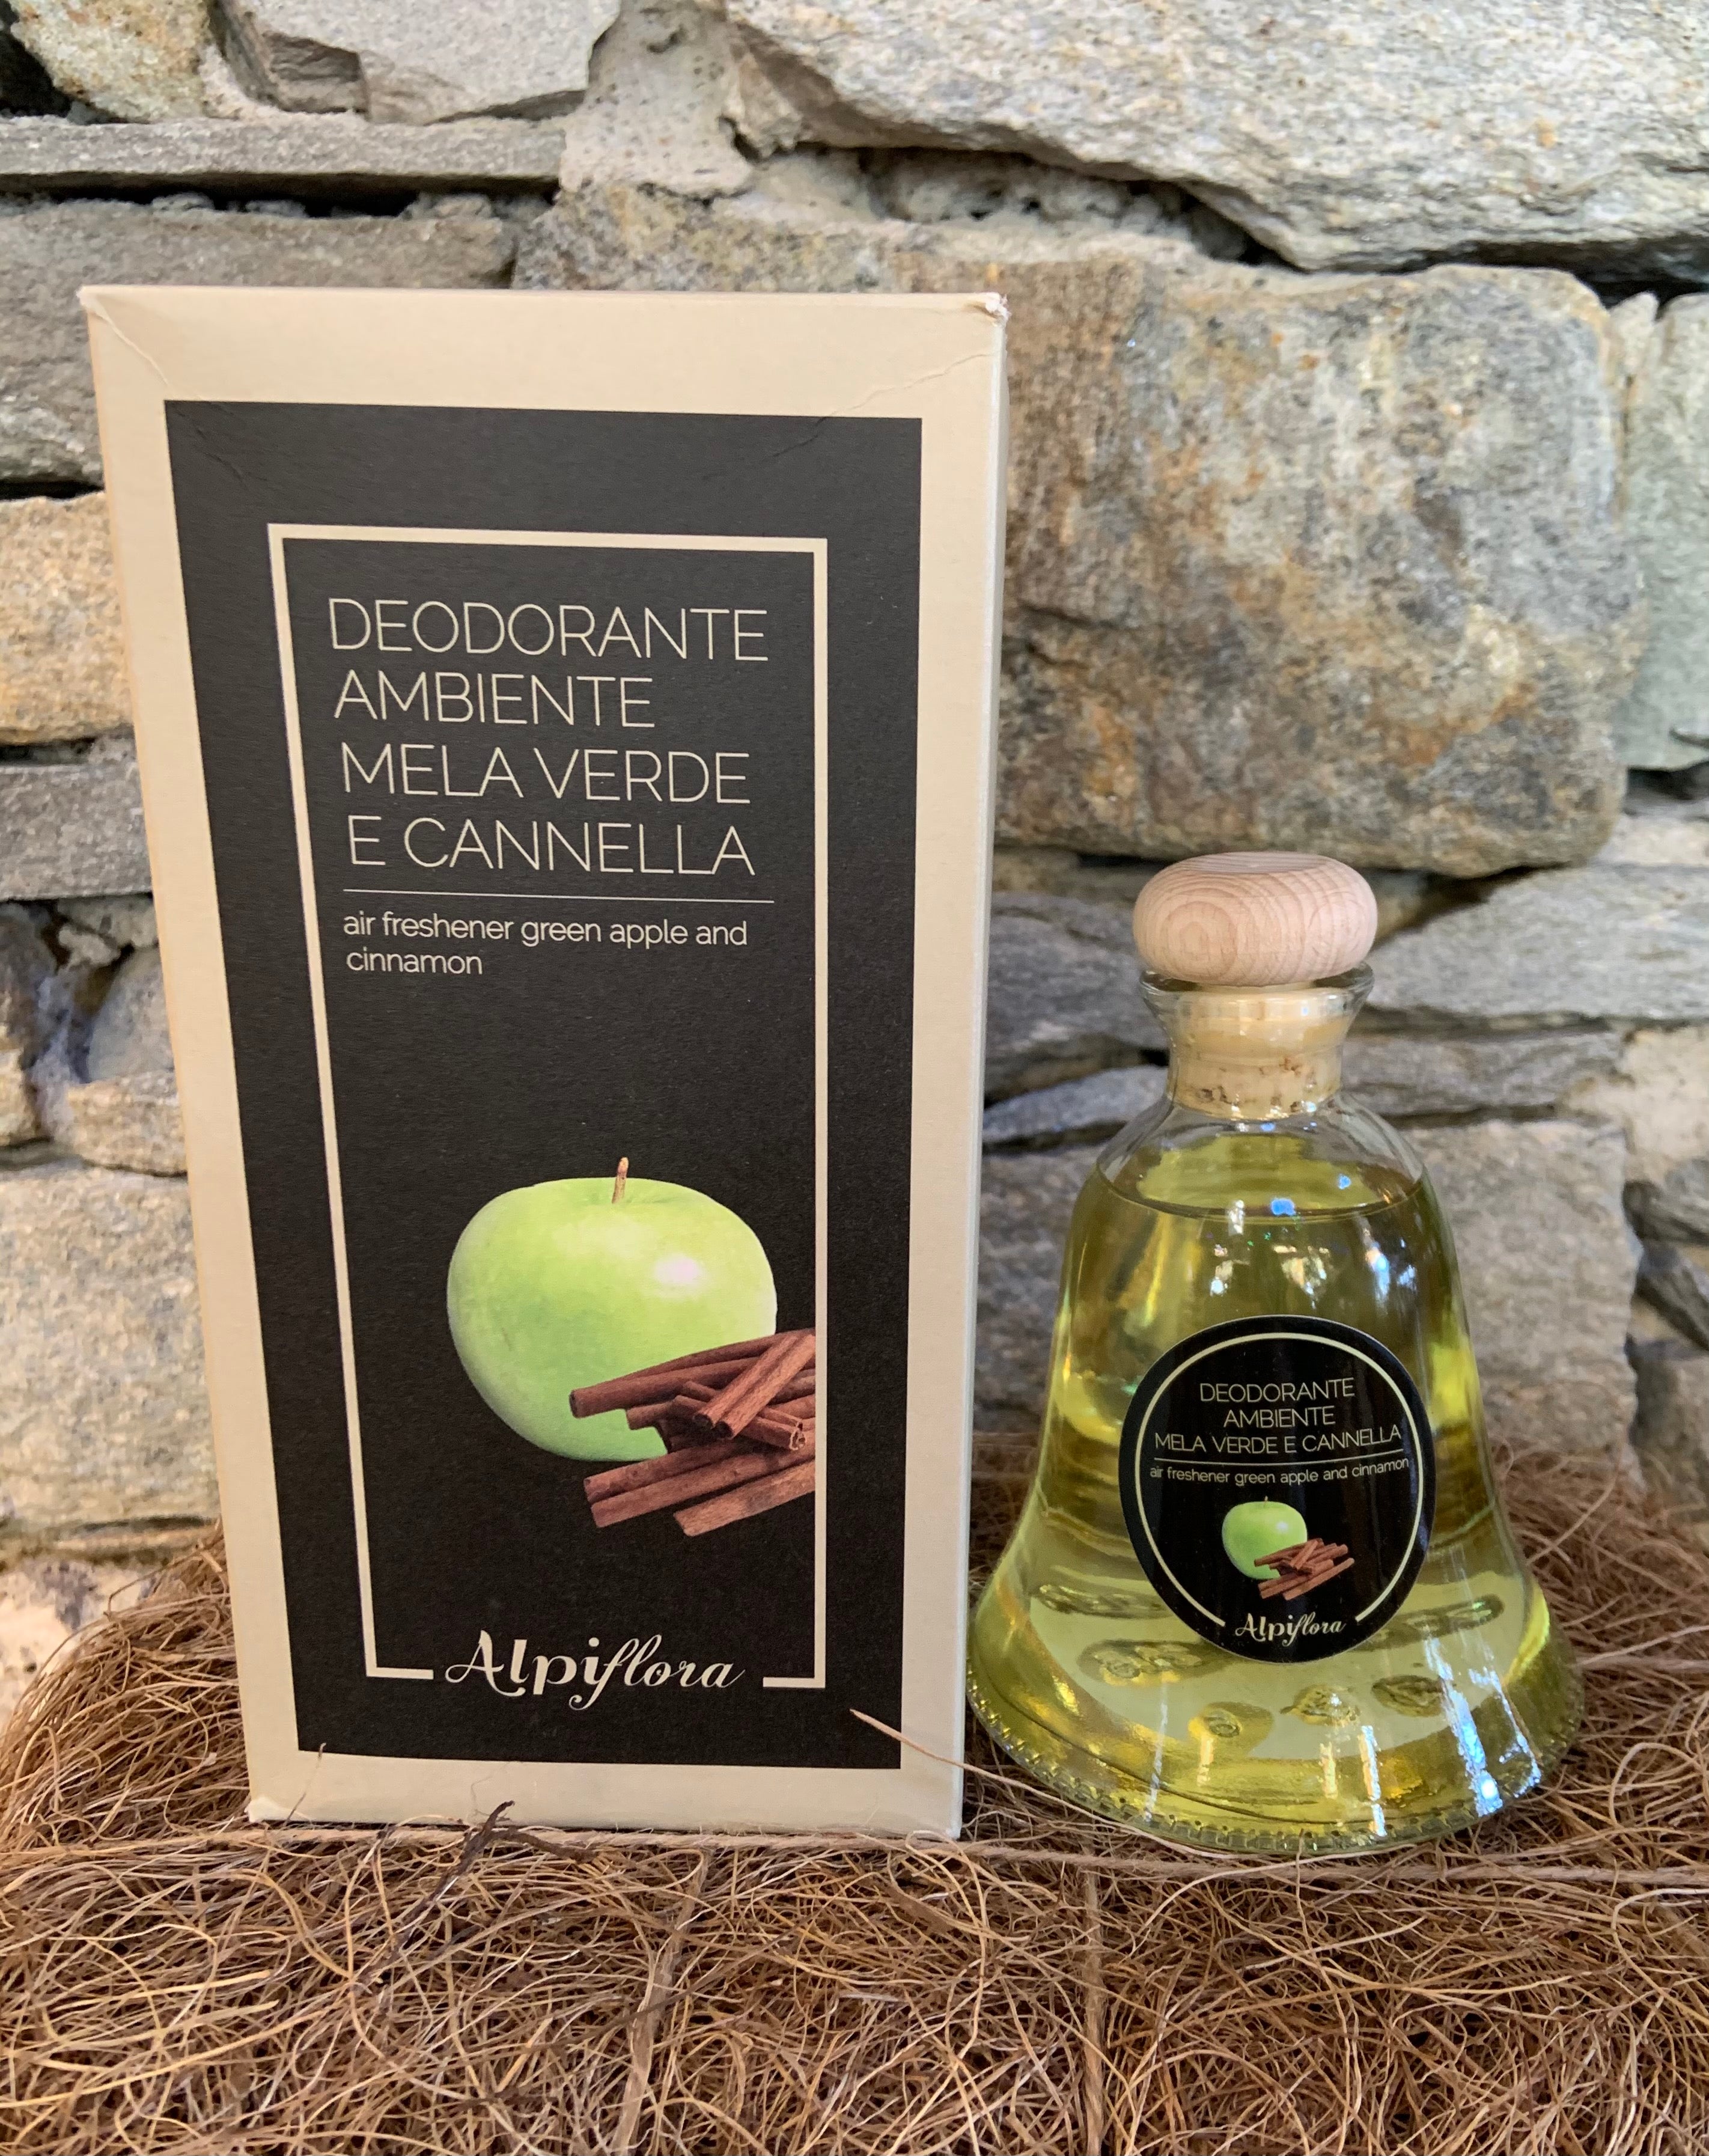 Deodorante ambiente Mela verde e Cannella 200ml – HIBOU Prodotti